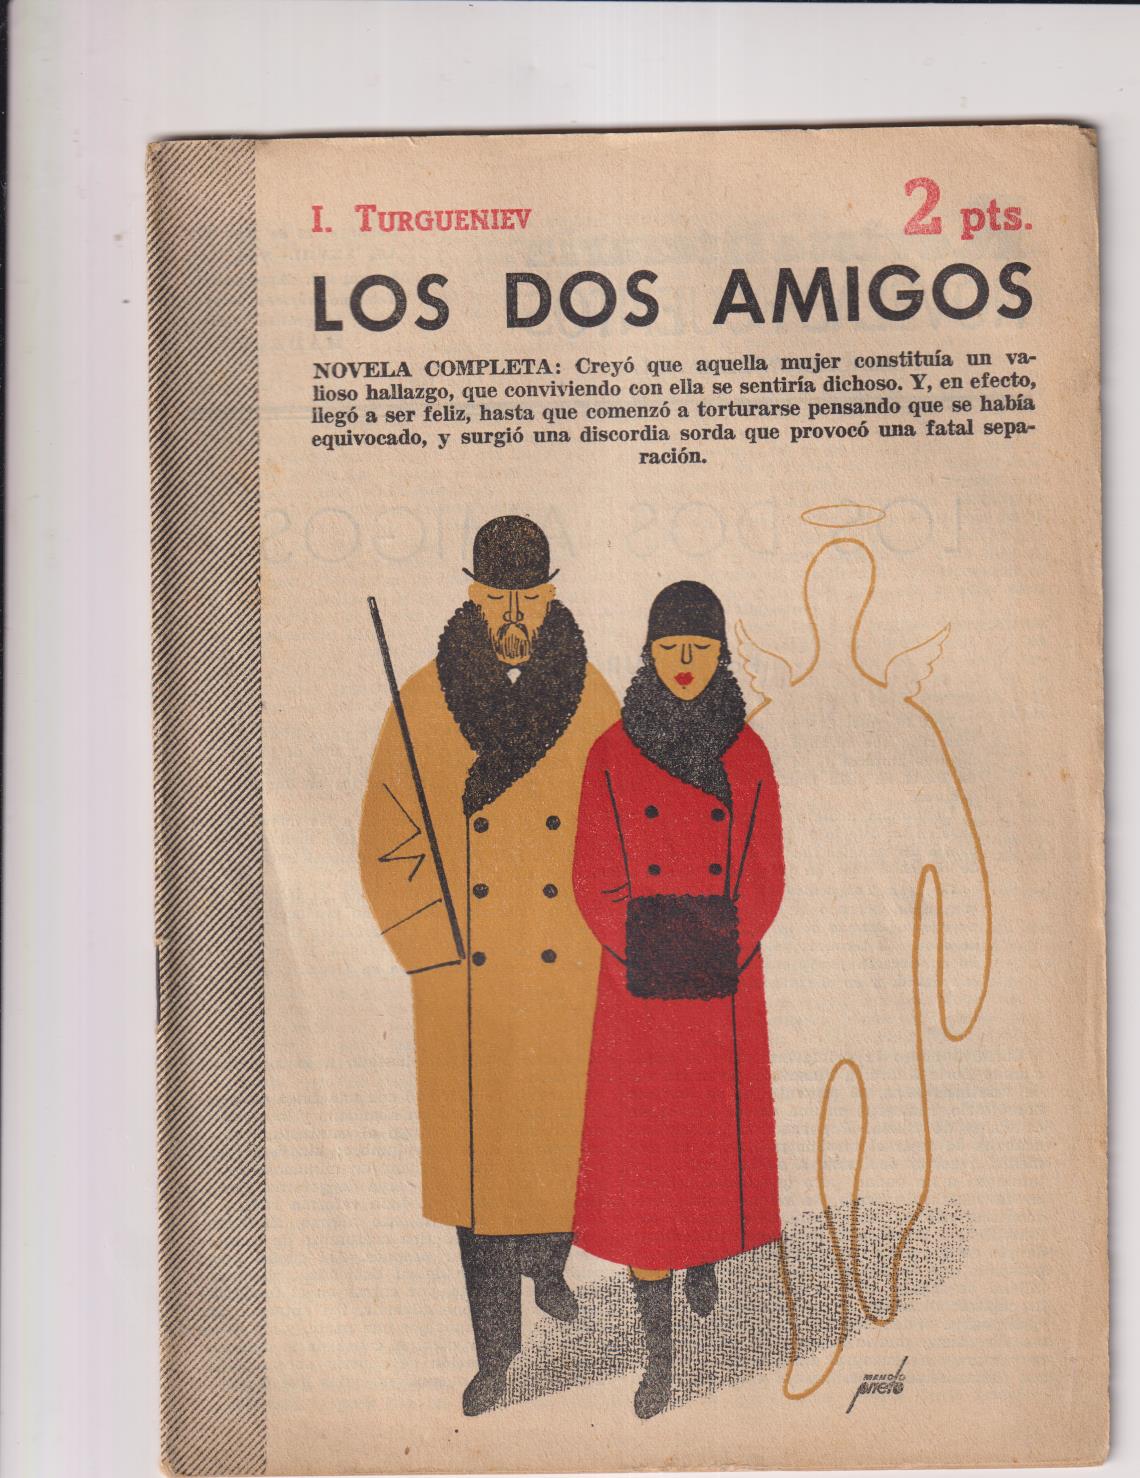 Revista Literaria Novelas y Cuentos nº 1315. Ivan Turgueniev. Los dos amigos, Año 1958